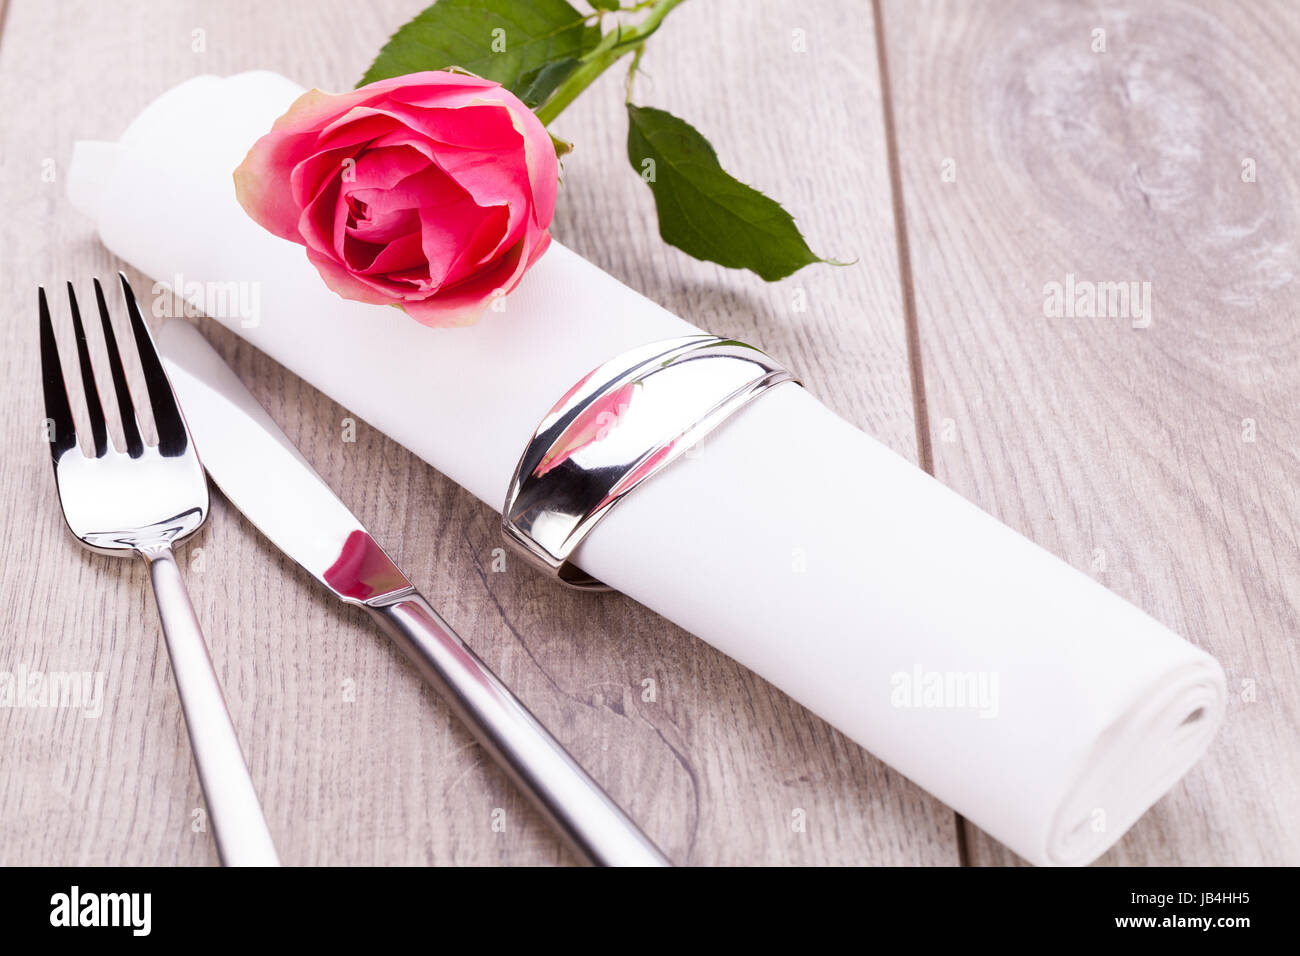 romantisch gedeckter tisch mit silberbesteck und einer rose in pink  geburtstag valentinstag essen menü muttertag Stock Photo - Alamy